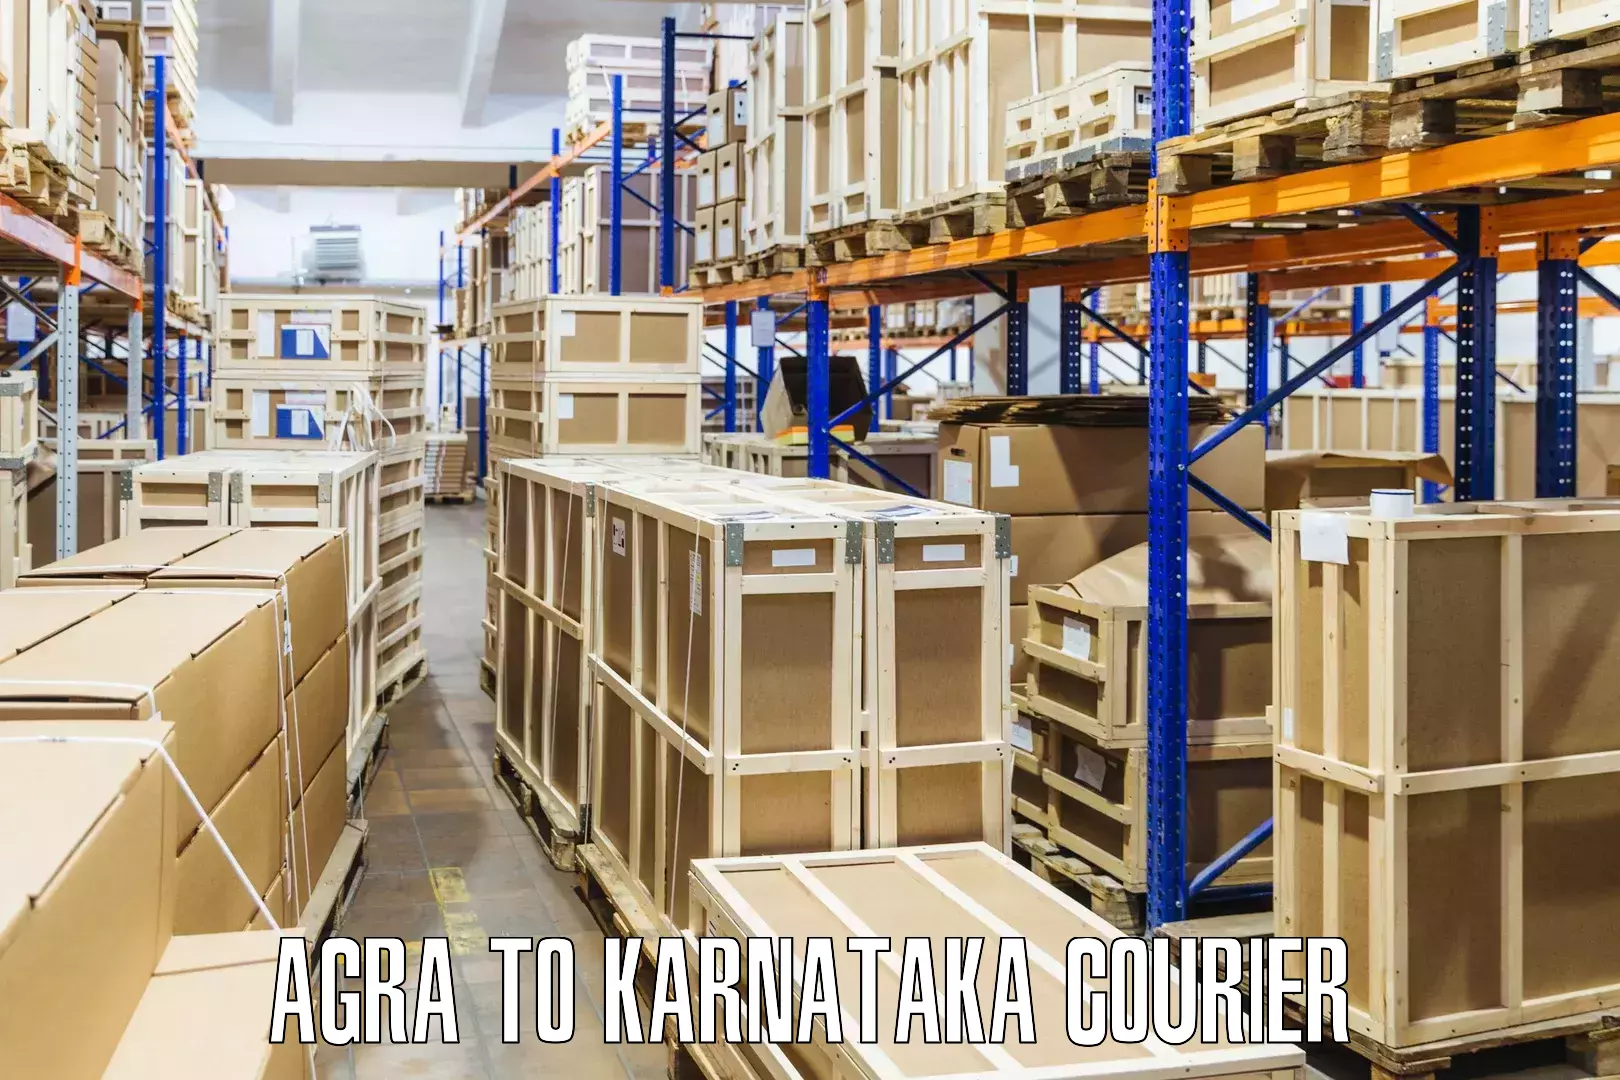 24-hour delivery options Agra to Karnataka